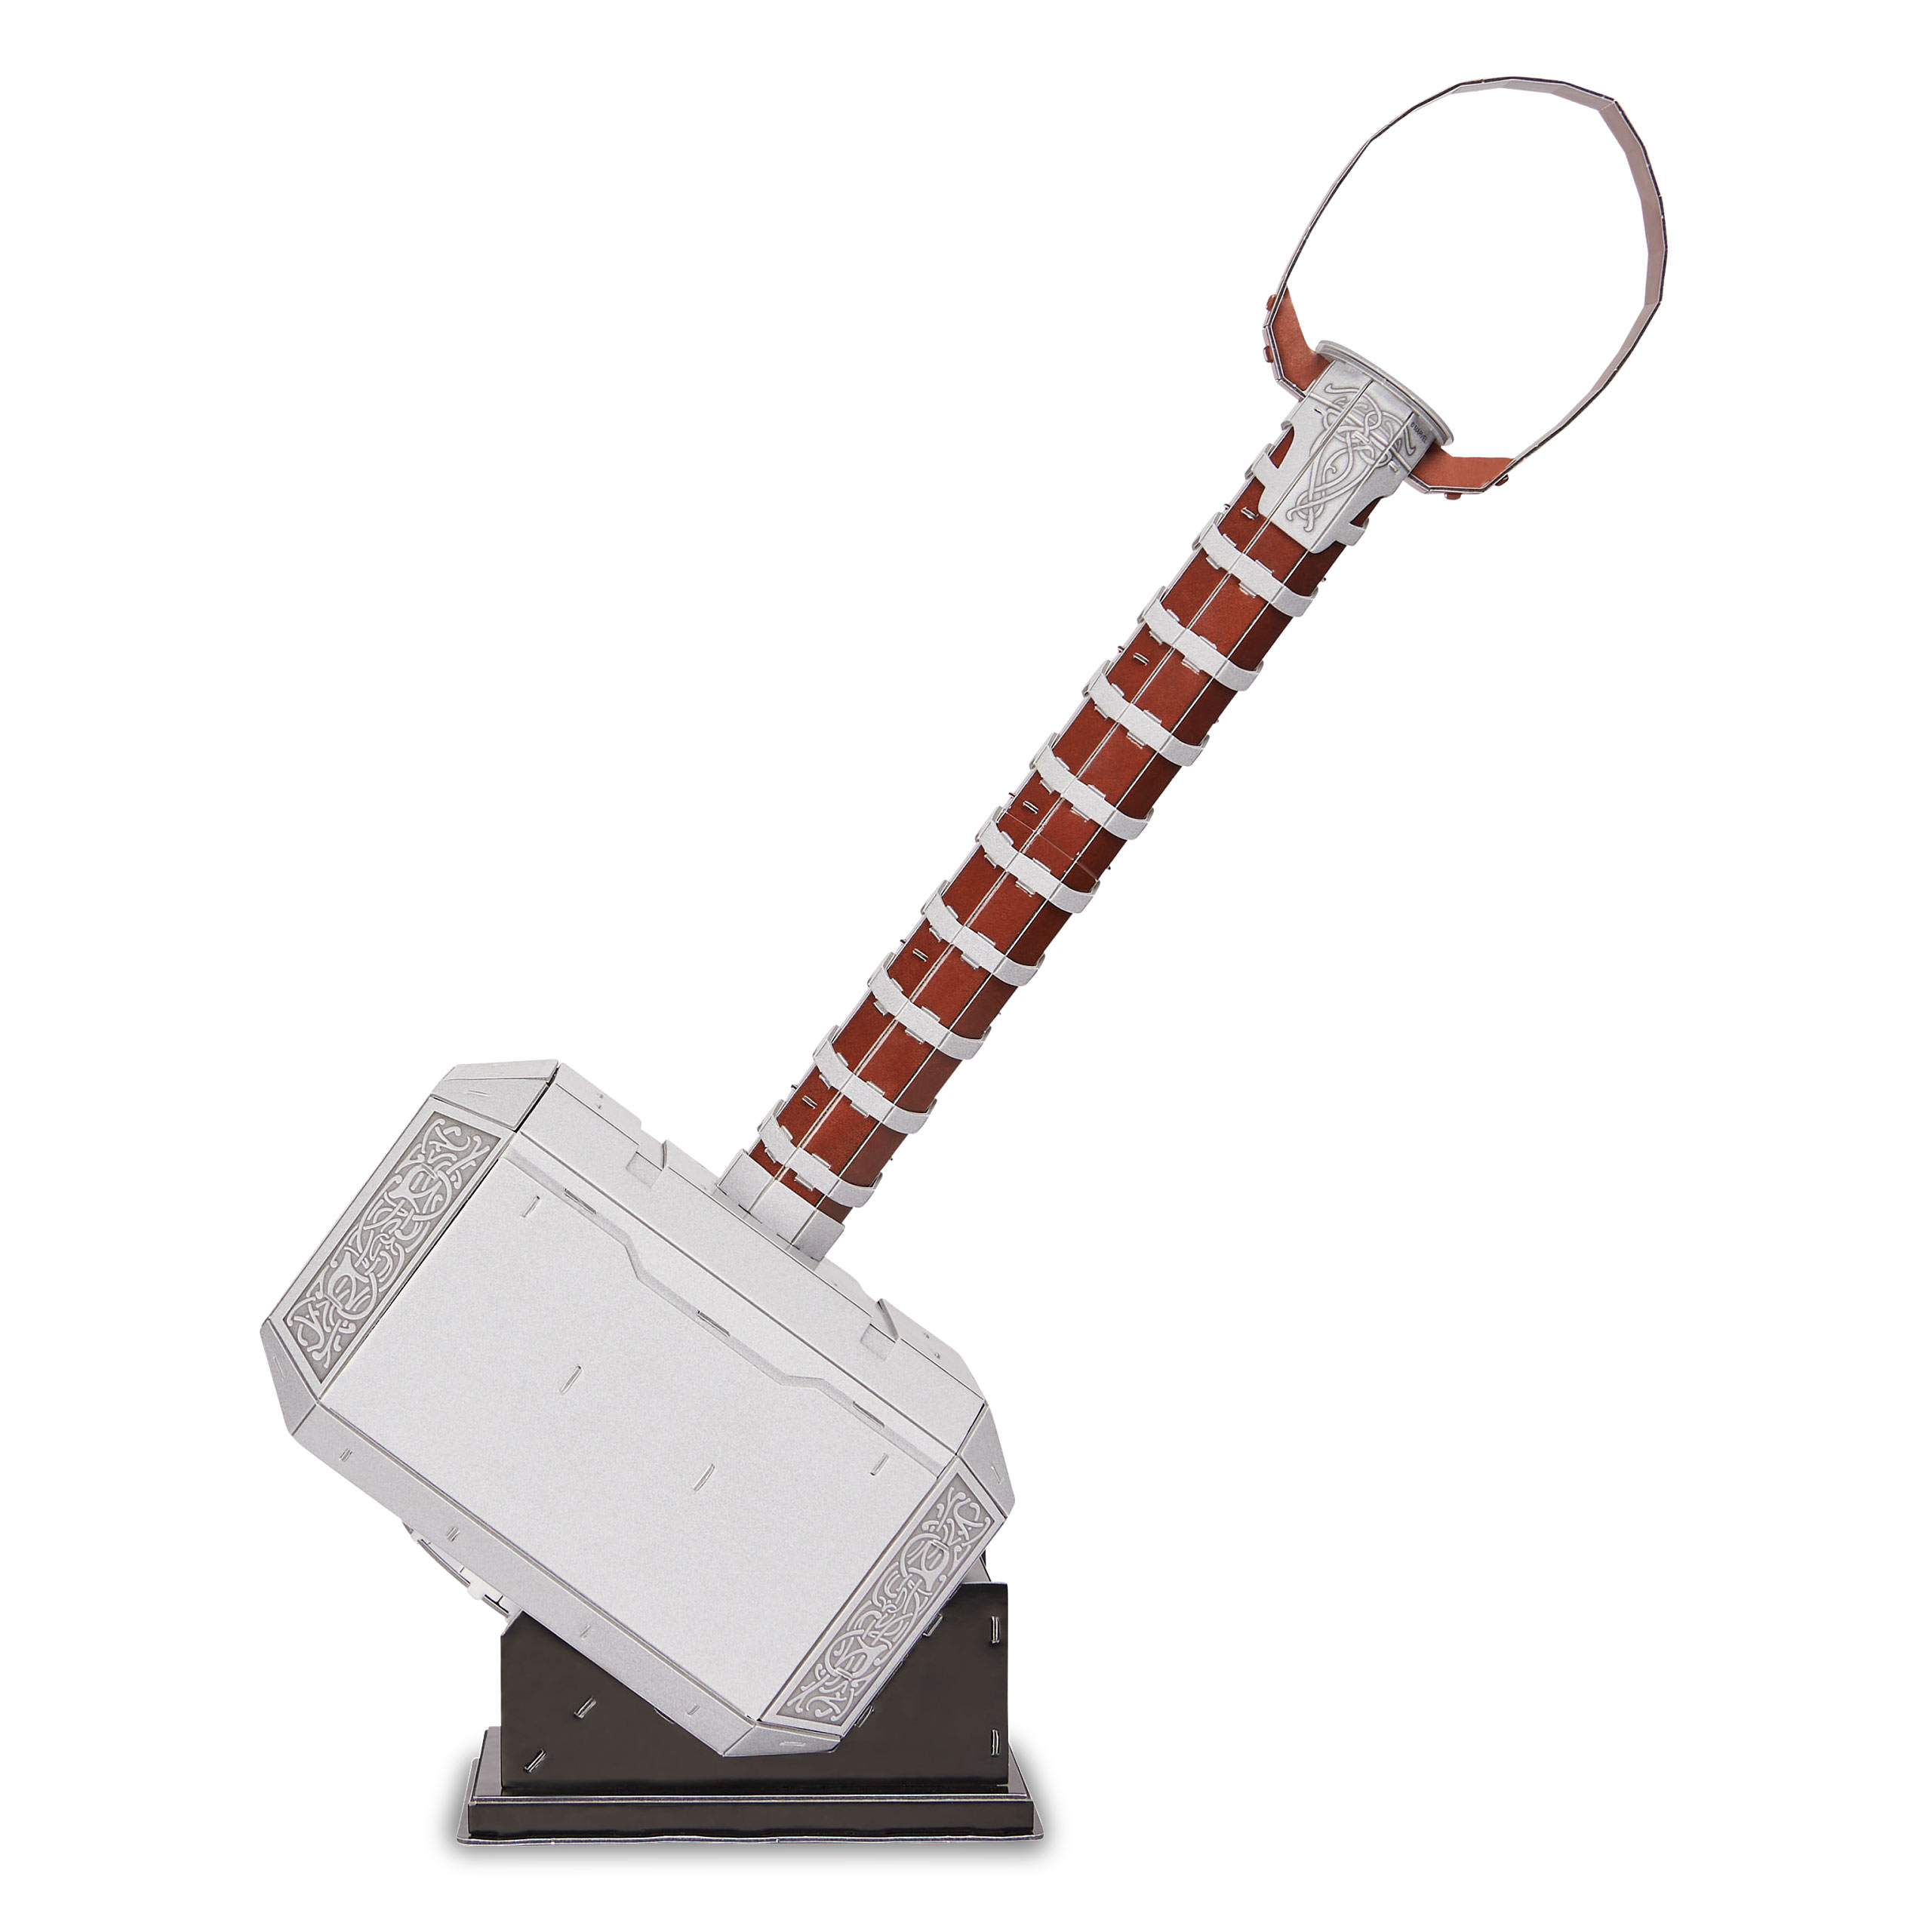 Thor's Hammer 4D Build Modell Bausatz - Marvel